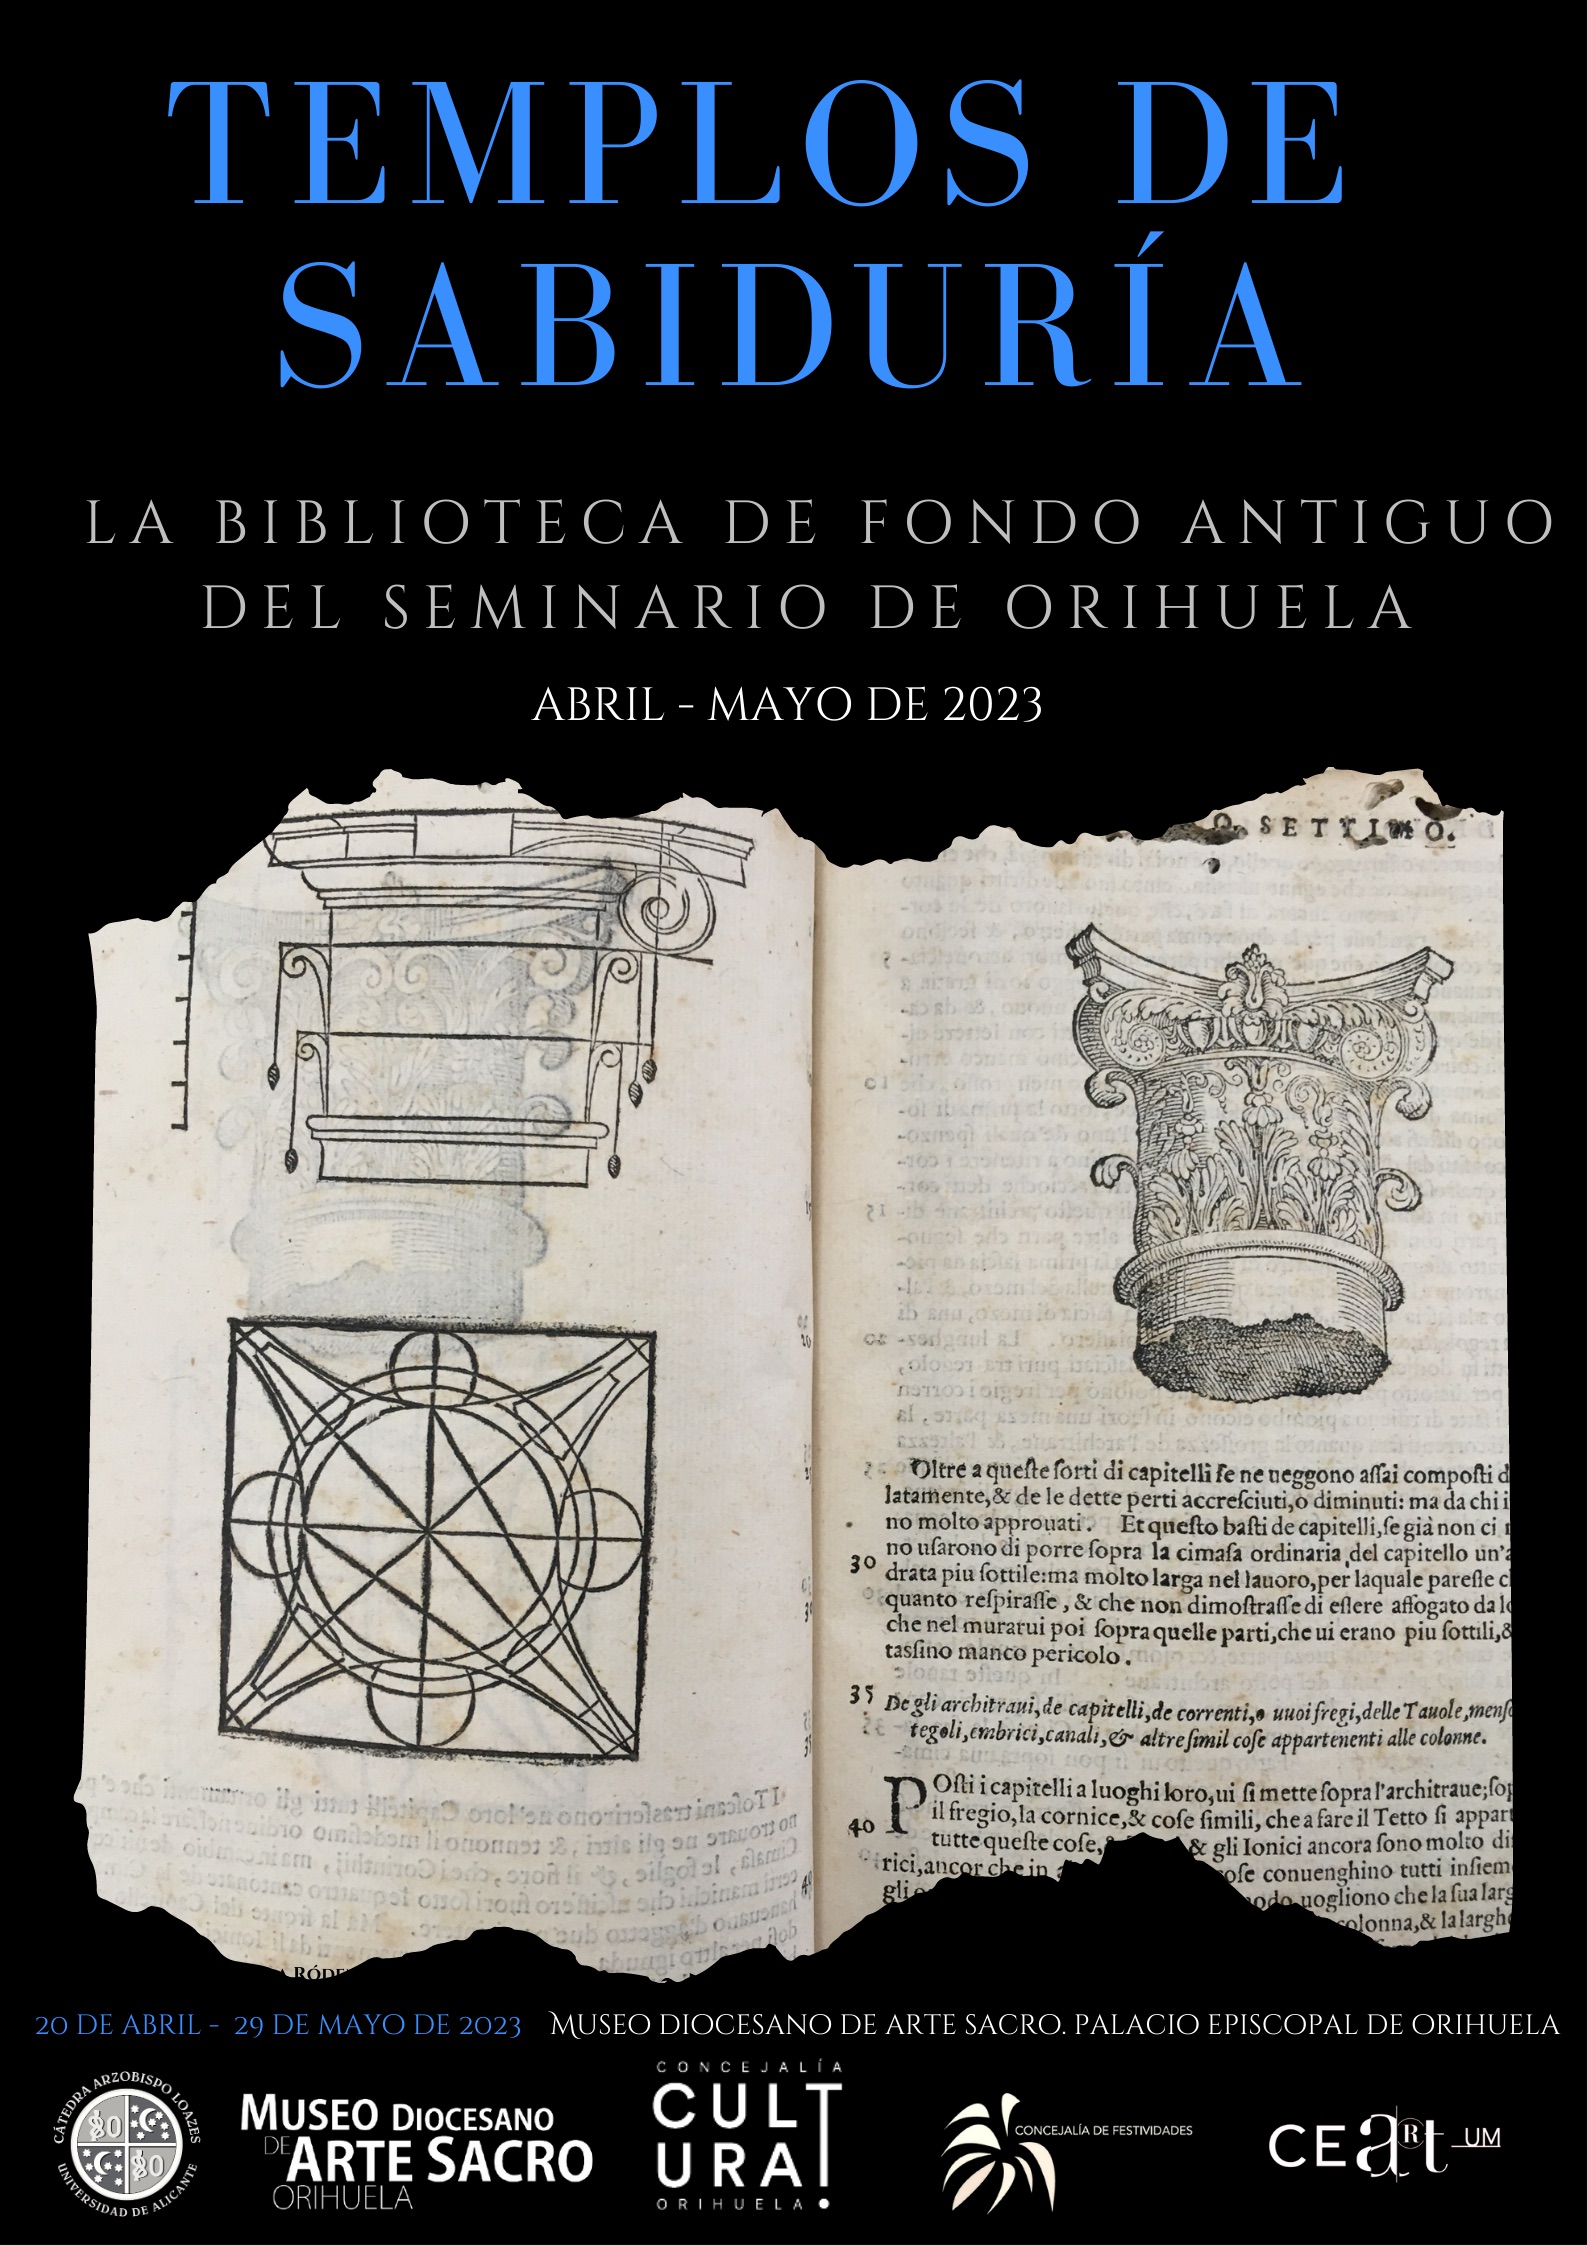 El Museo de Arte Sacro reúne 50 libros de los siglos XV al XVIII de la Biblioteca del Seminario de Orihuela